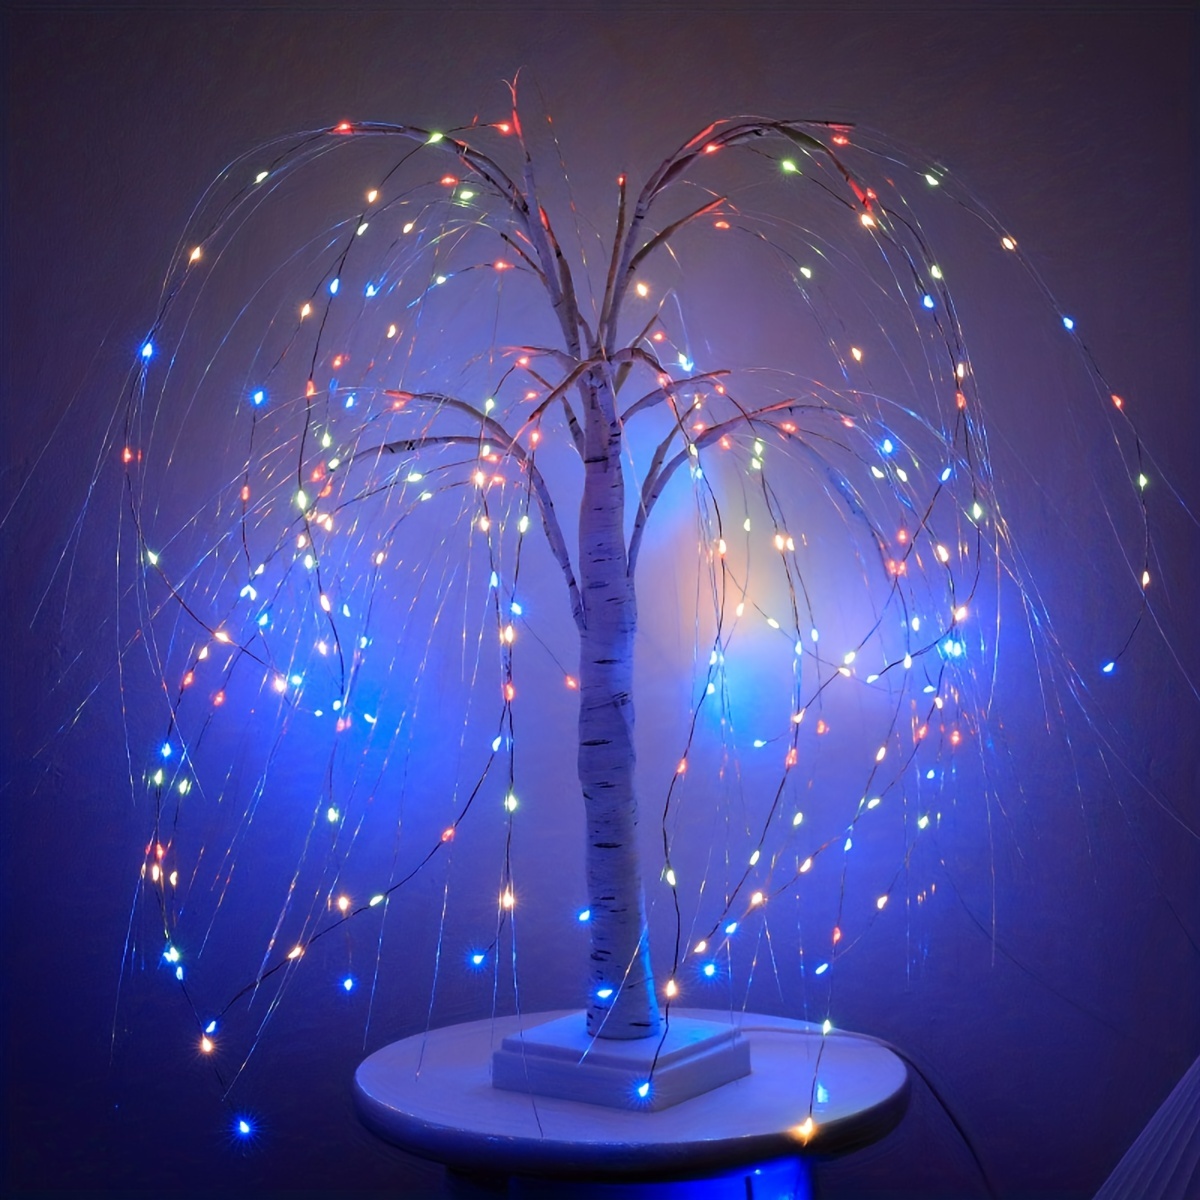 友愛玩具 LEDウィロウライト LEDウィロウブランチライト(ホワイト) WG-8496WH 『クリスマス 屋外 LED イルミネーション ライト』  屋外照明